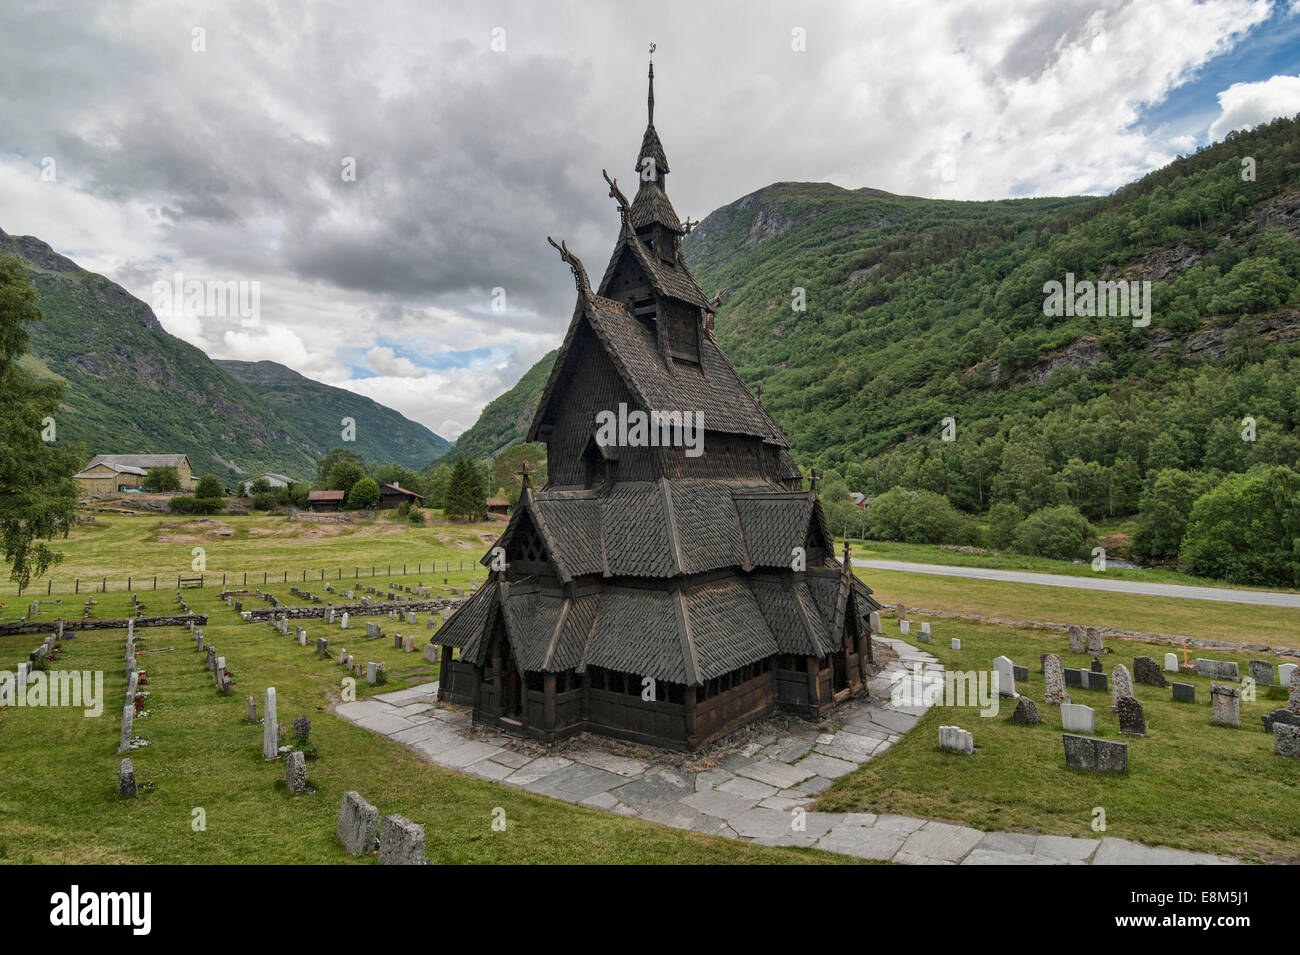 Église Borgund est une église située dans le village de Borgund, Norvège Banque D'Images